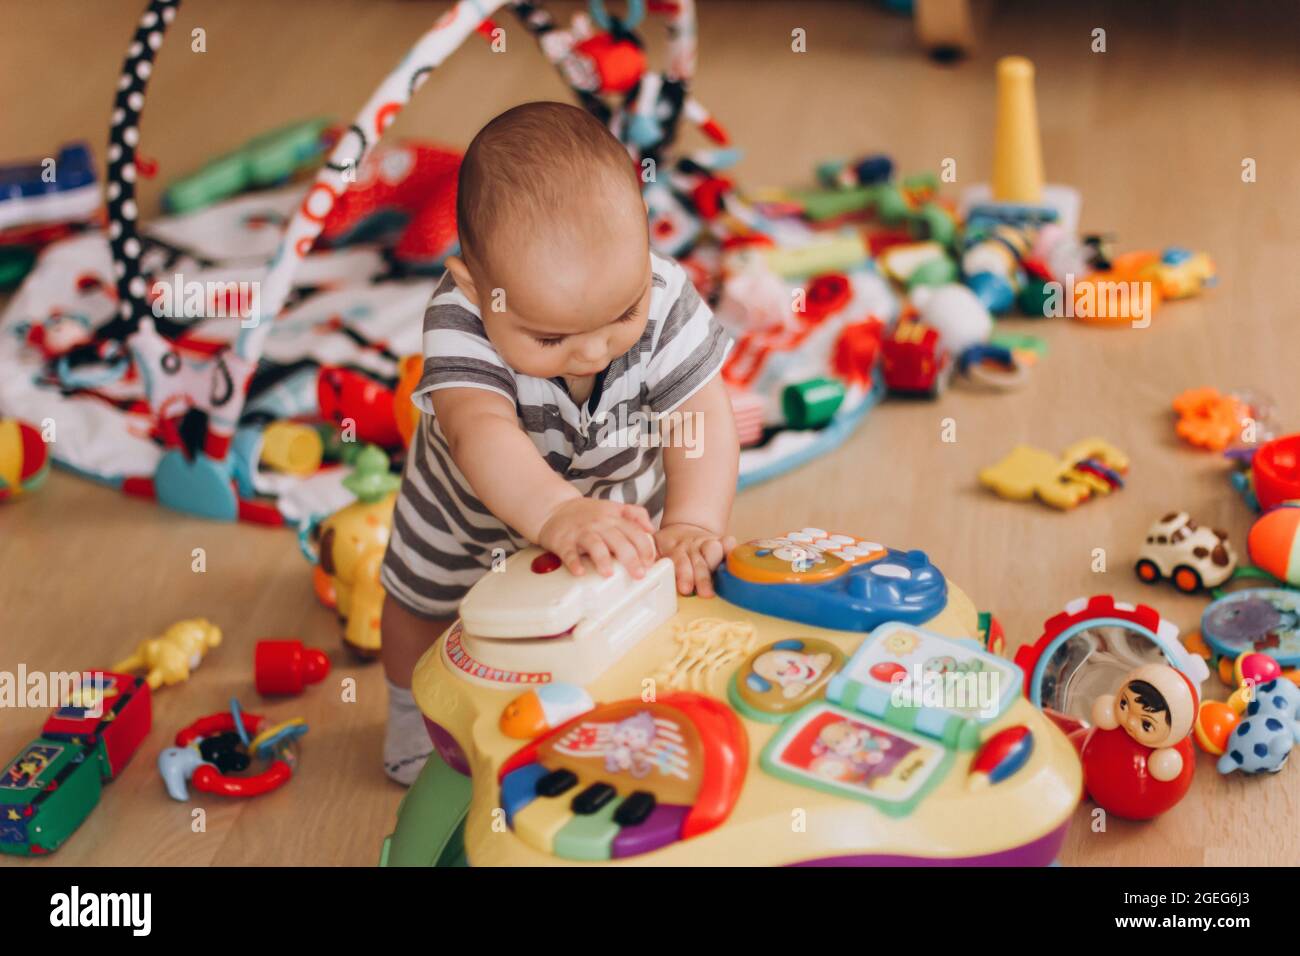 Simpatico baby chubby si alza e gioca con il tavolo di musica per bambini. Un sacco di giocattoli colorati ovunque. Foto Stock